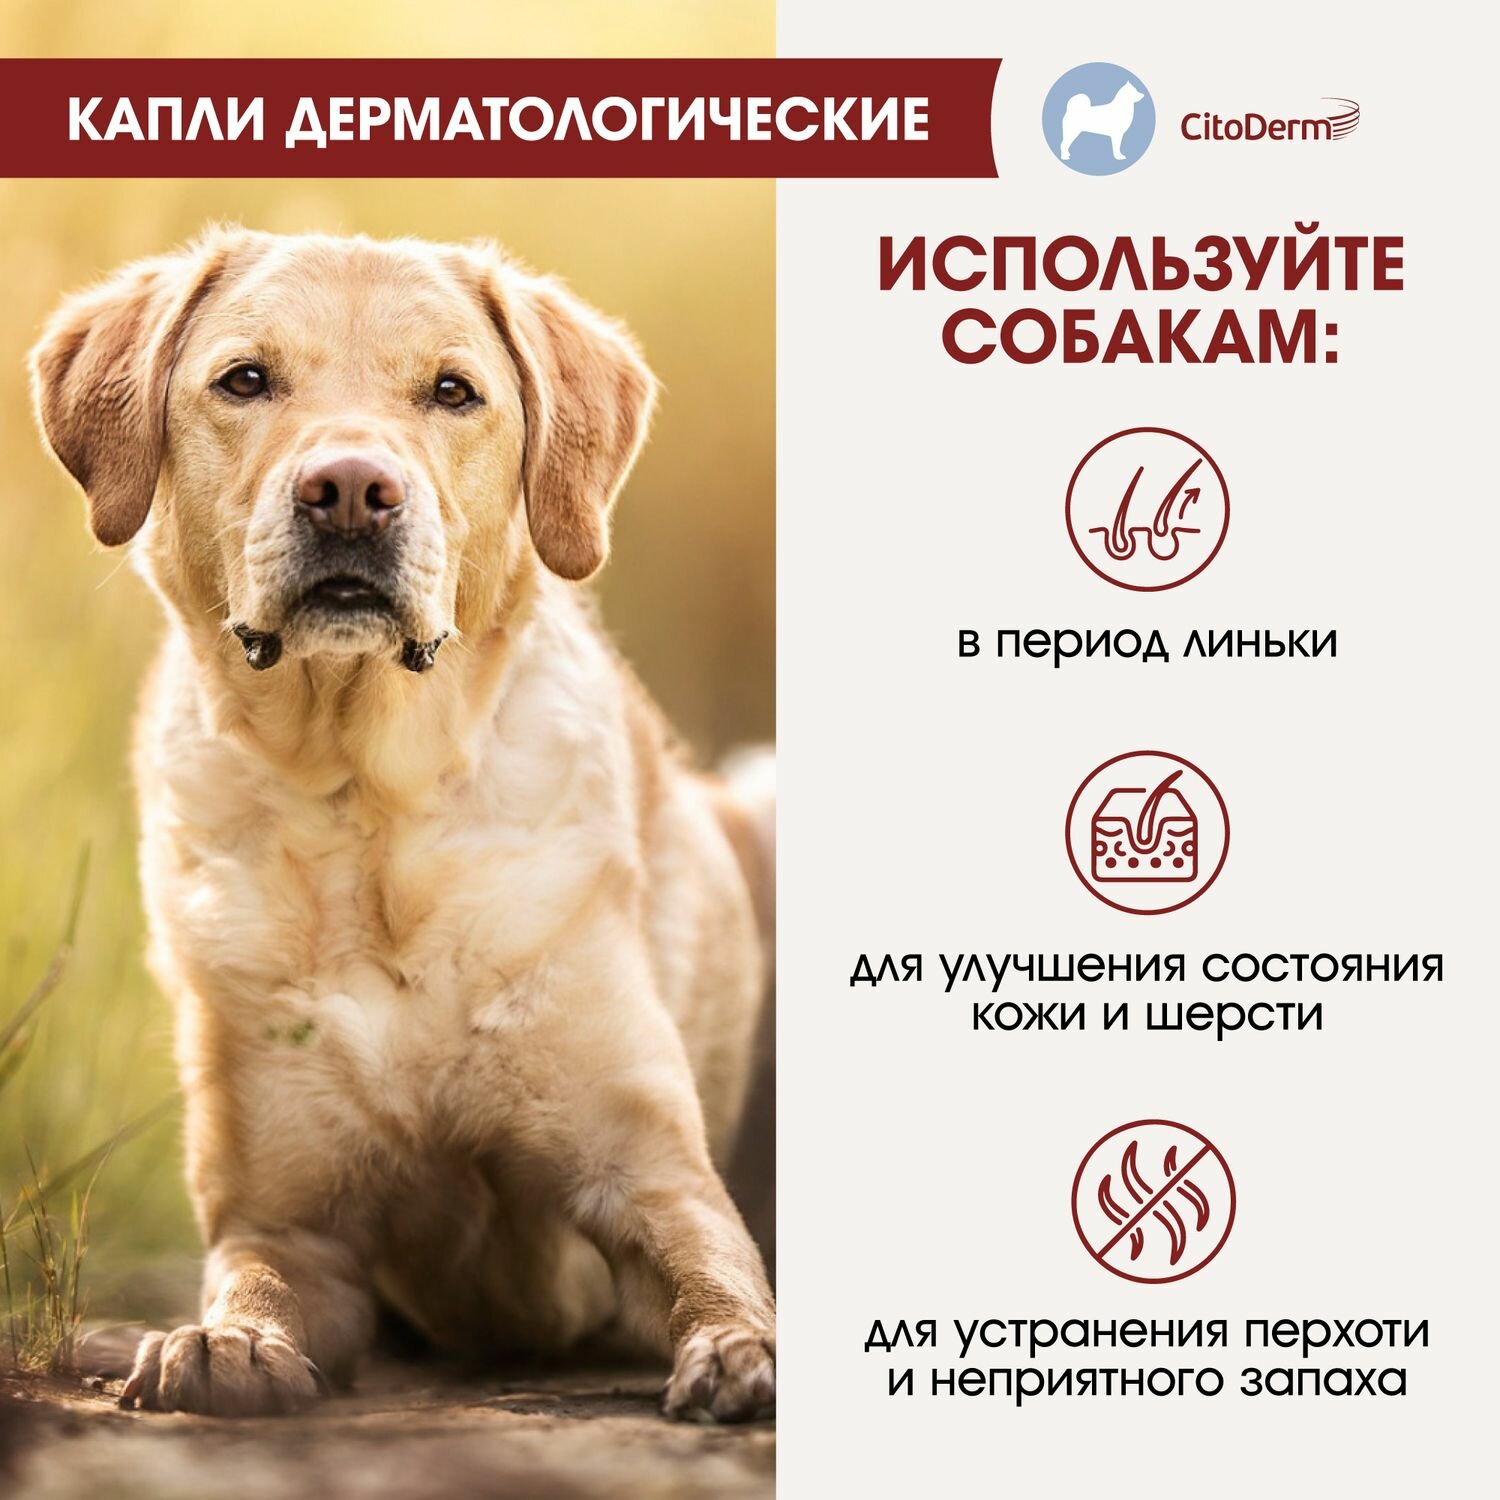 Капли дерматологические CitoDerm для собак 10-30 кг, 4 пипетки по 3мл - фото №9